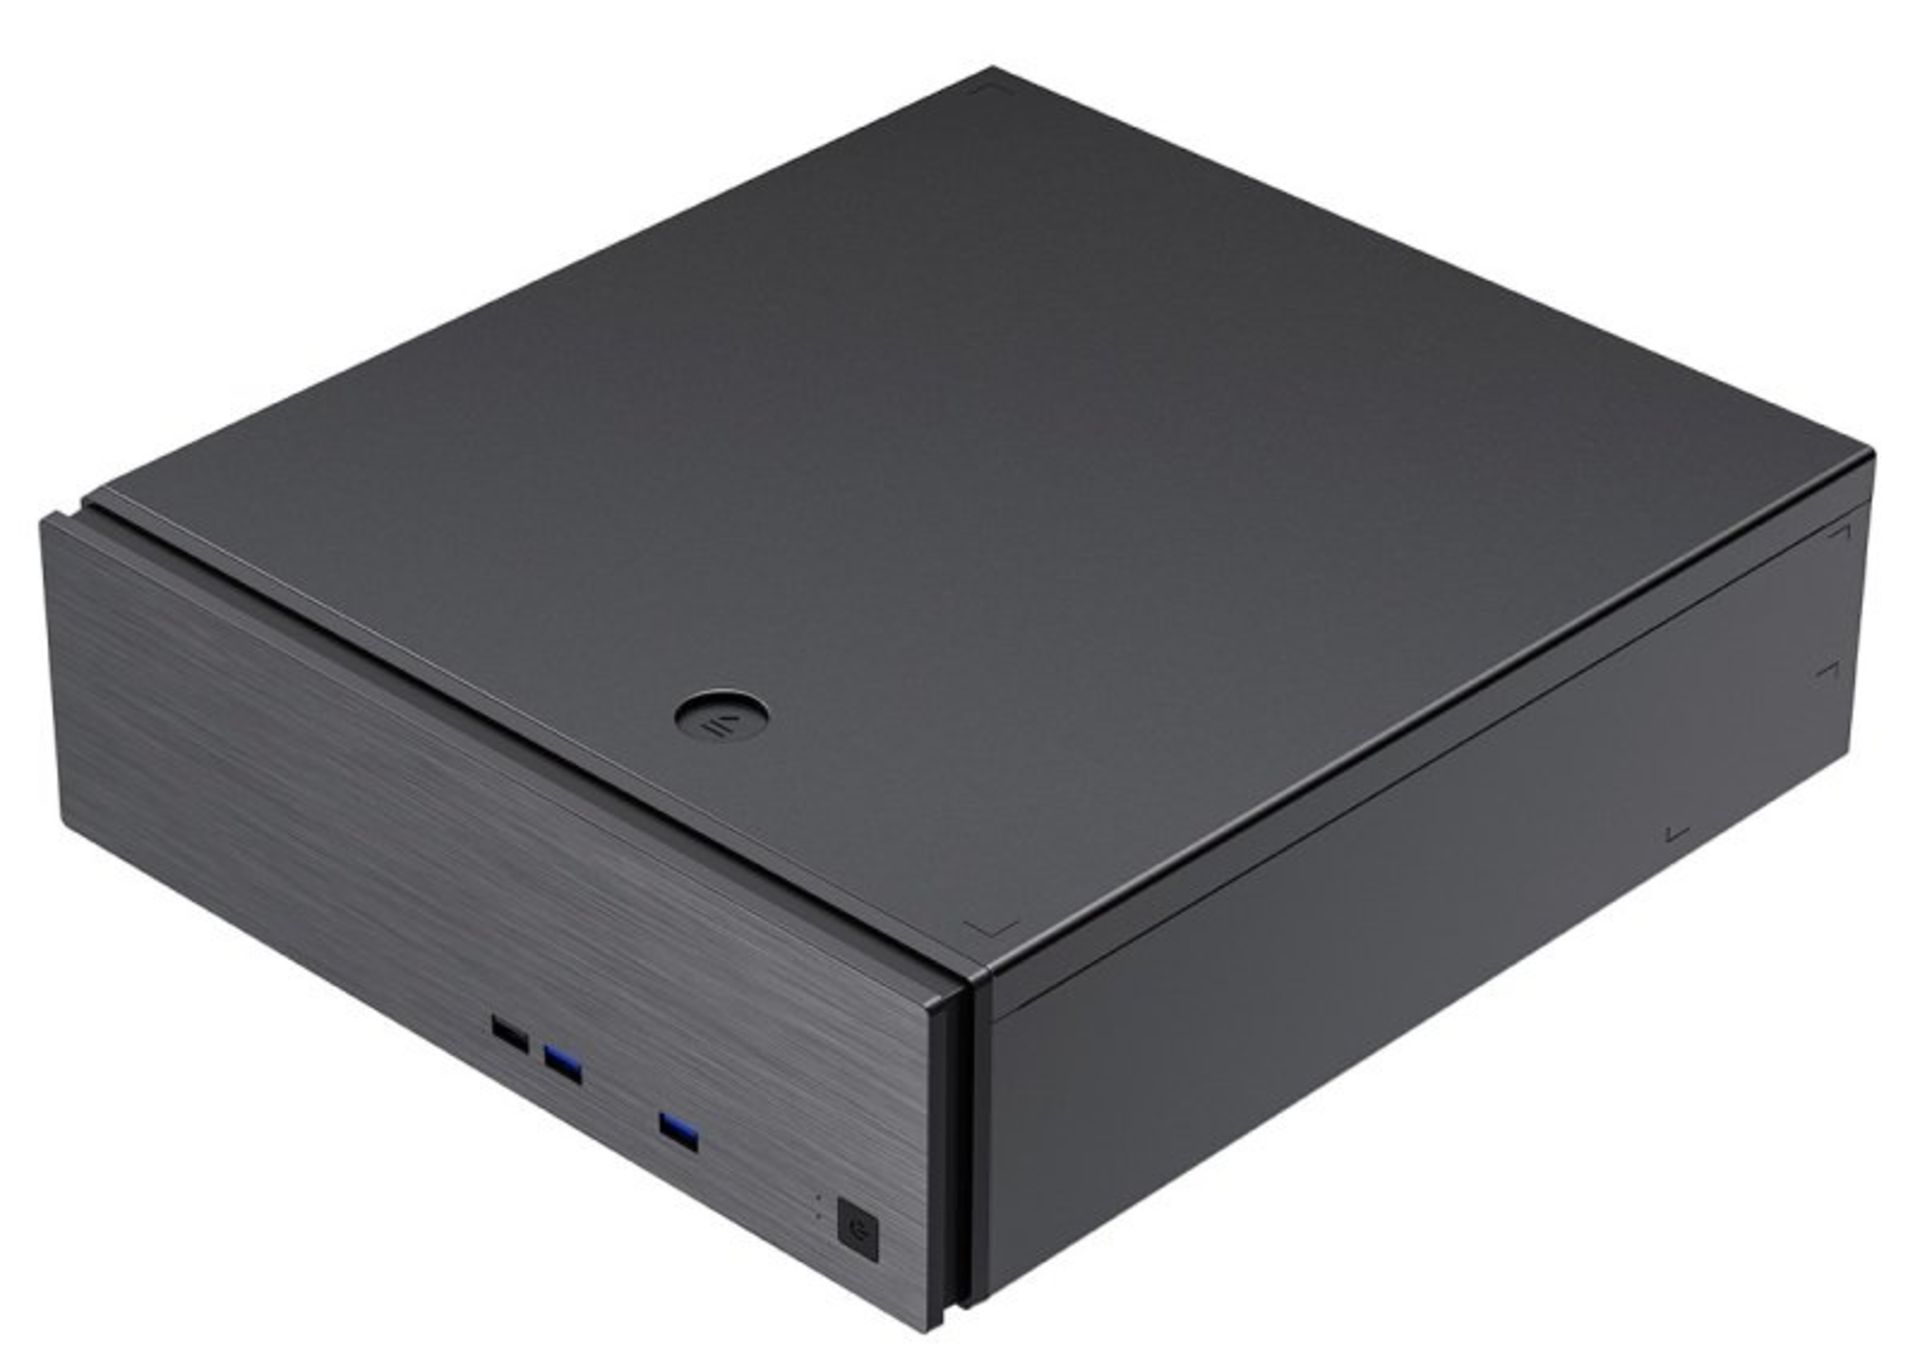 3x NEW & BOXED CIT S506 Micro ATX Desktop Case - BLACK. RRP £44.99 EACH. (PCK). The CiT S506 slim - Image 5 of 10